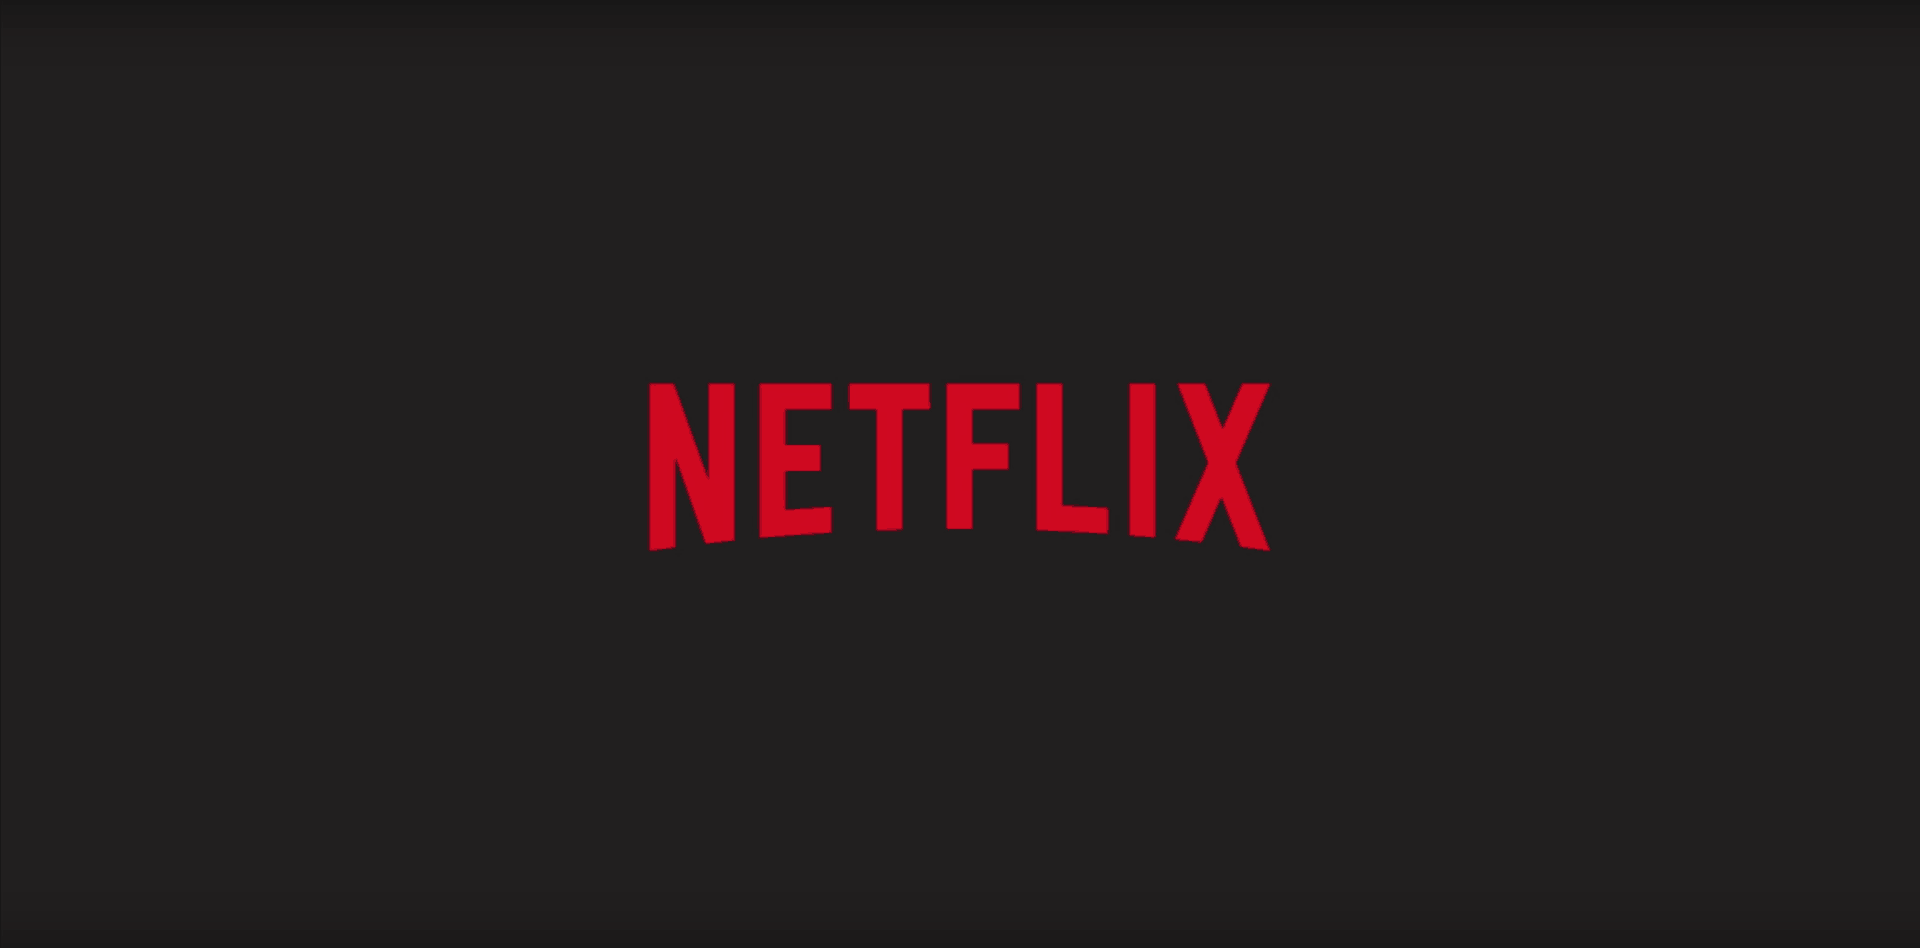 ميزة Netflix iOS الجديدة "مجموعات" تعرض محتوى منسقًا من قِبل الإنسان